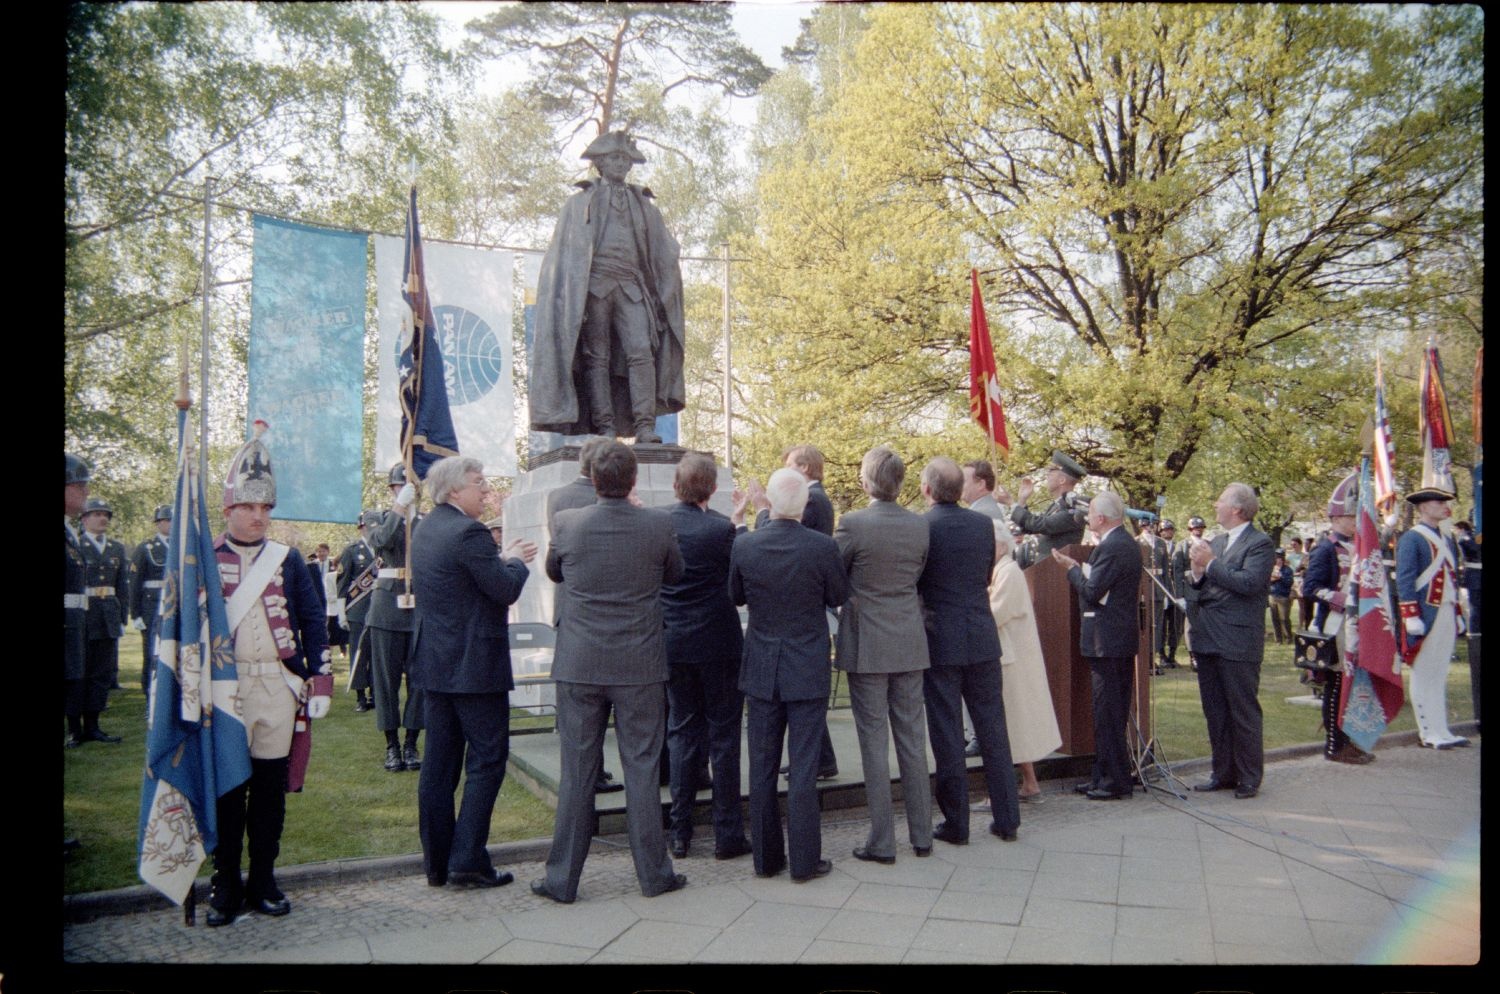 Fotografie: Enthüllung des Denkmals für General Friedrich Wilhelm Baron von Steuben an der Clayallee in Berlin-Dahlem